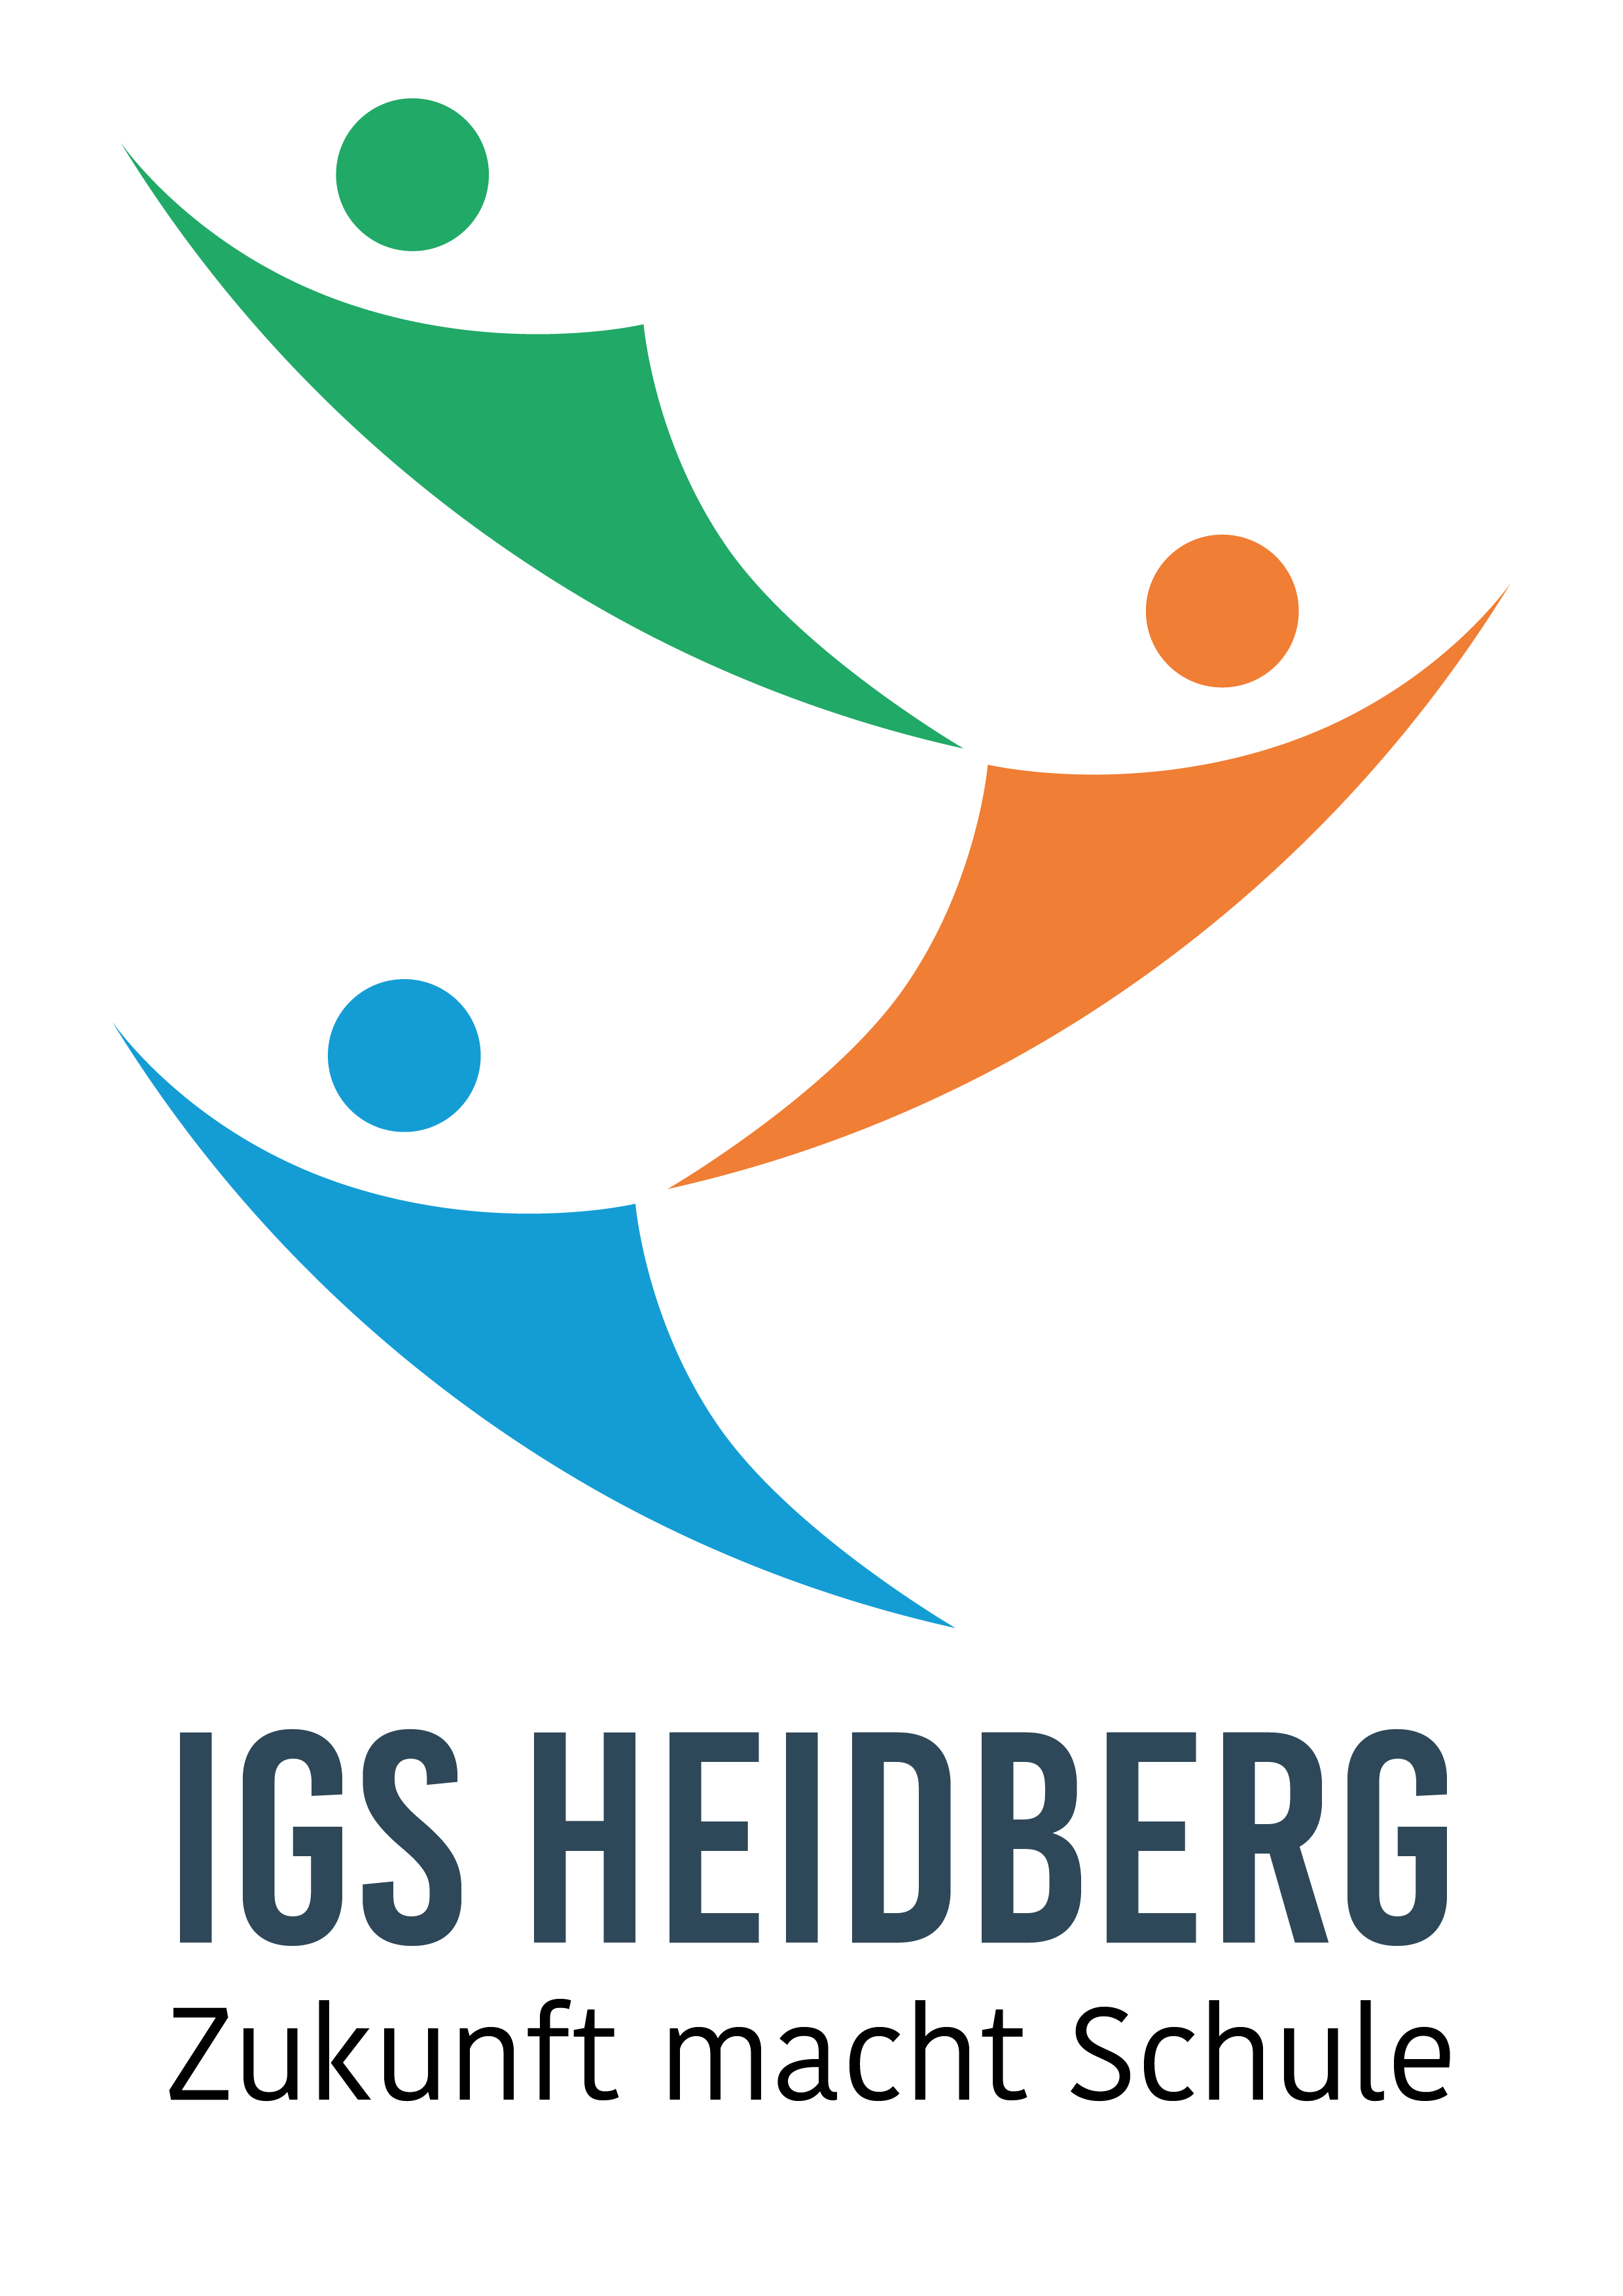 IGS Heidberg